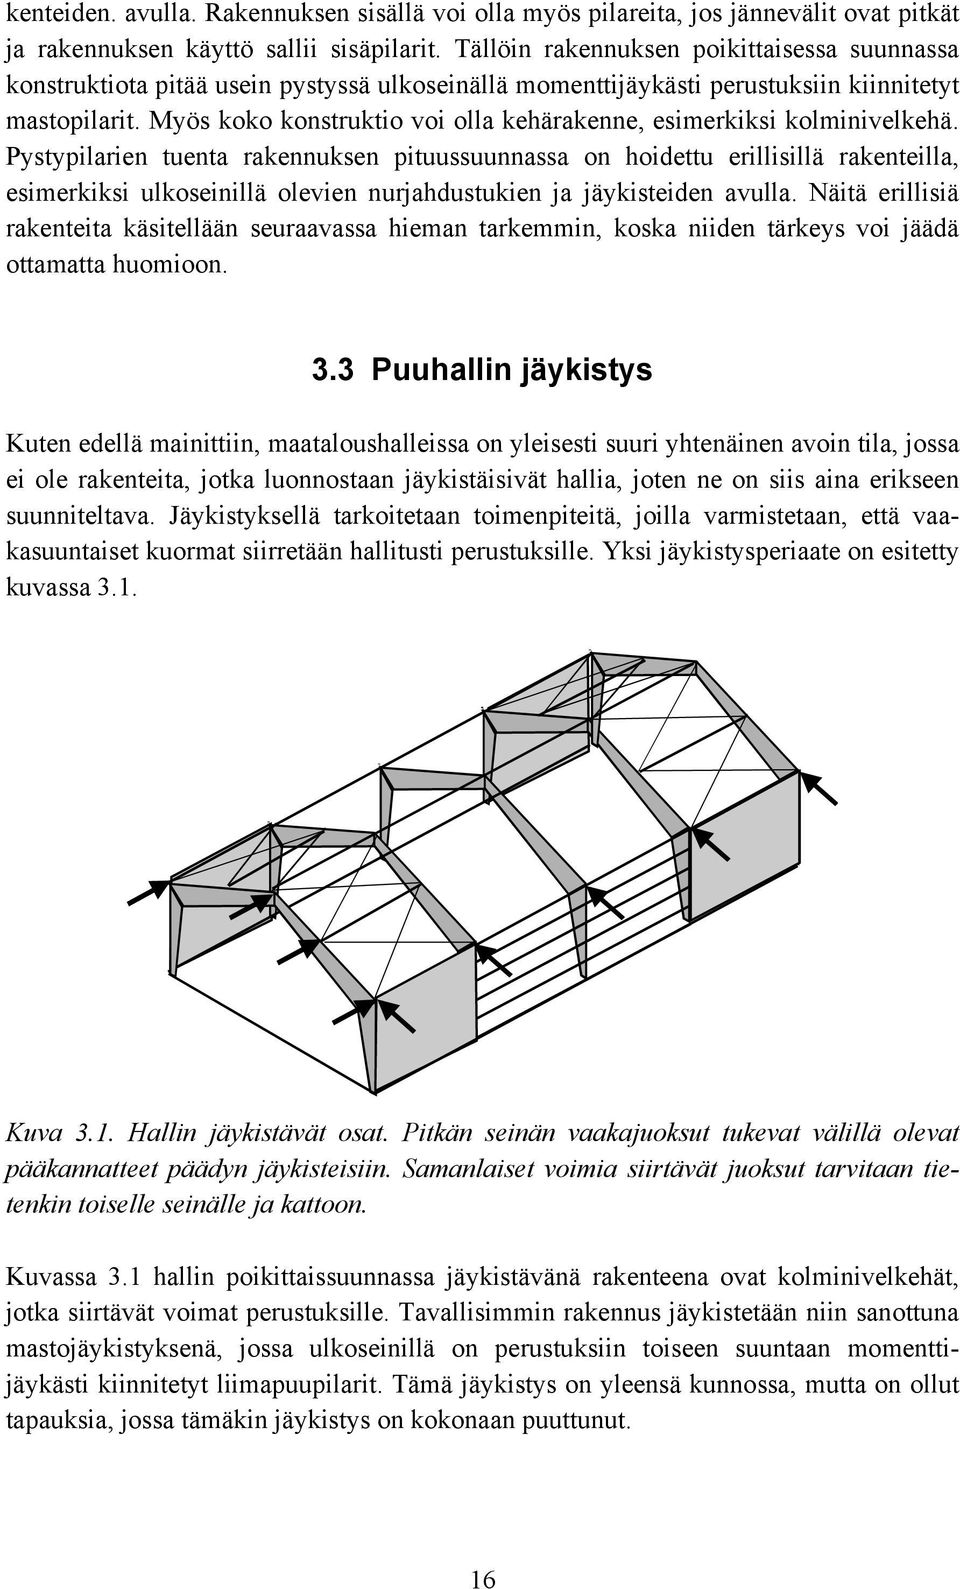 Myös koko konstruktio voi olla kehärakenne, esimerkiksi kolminivelkehä.